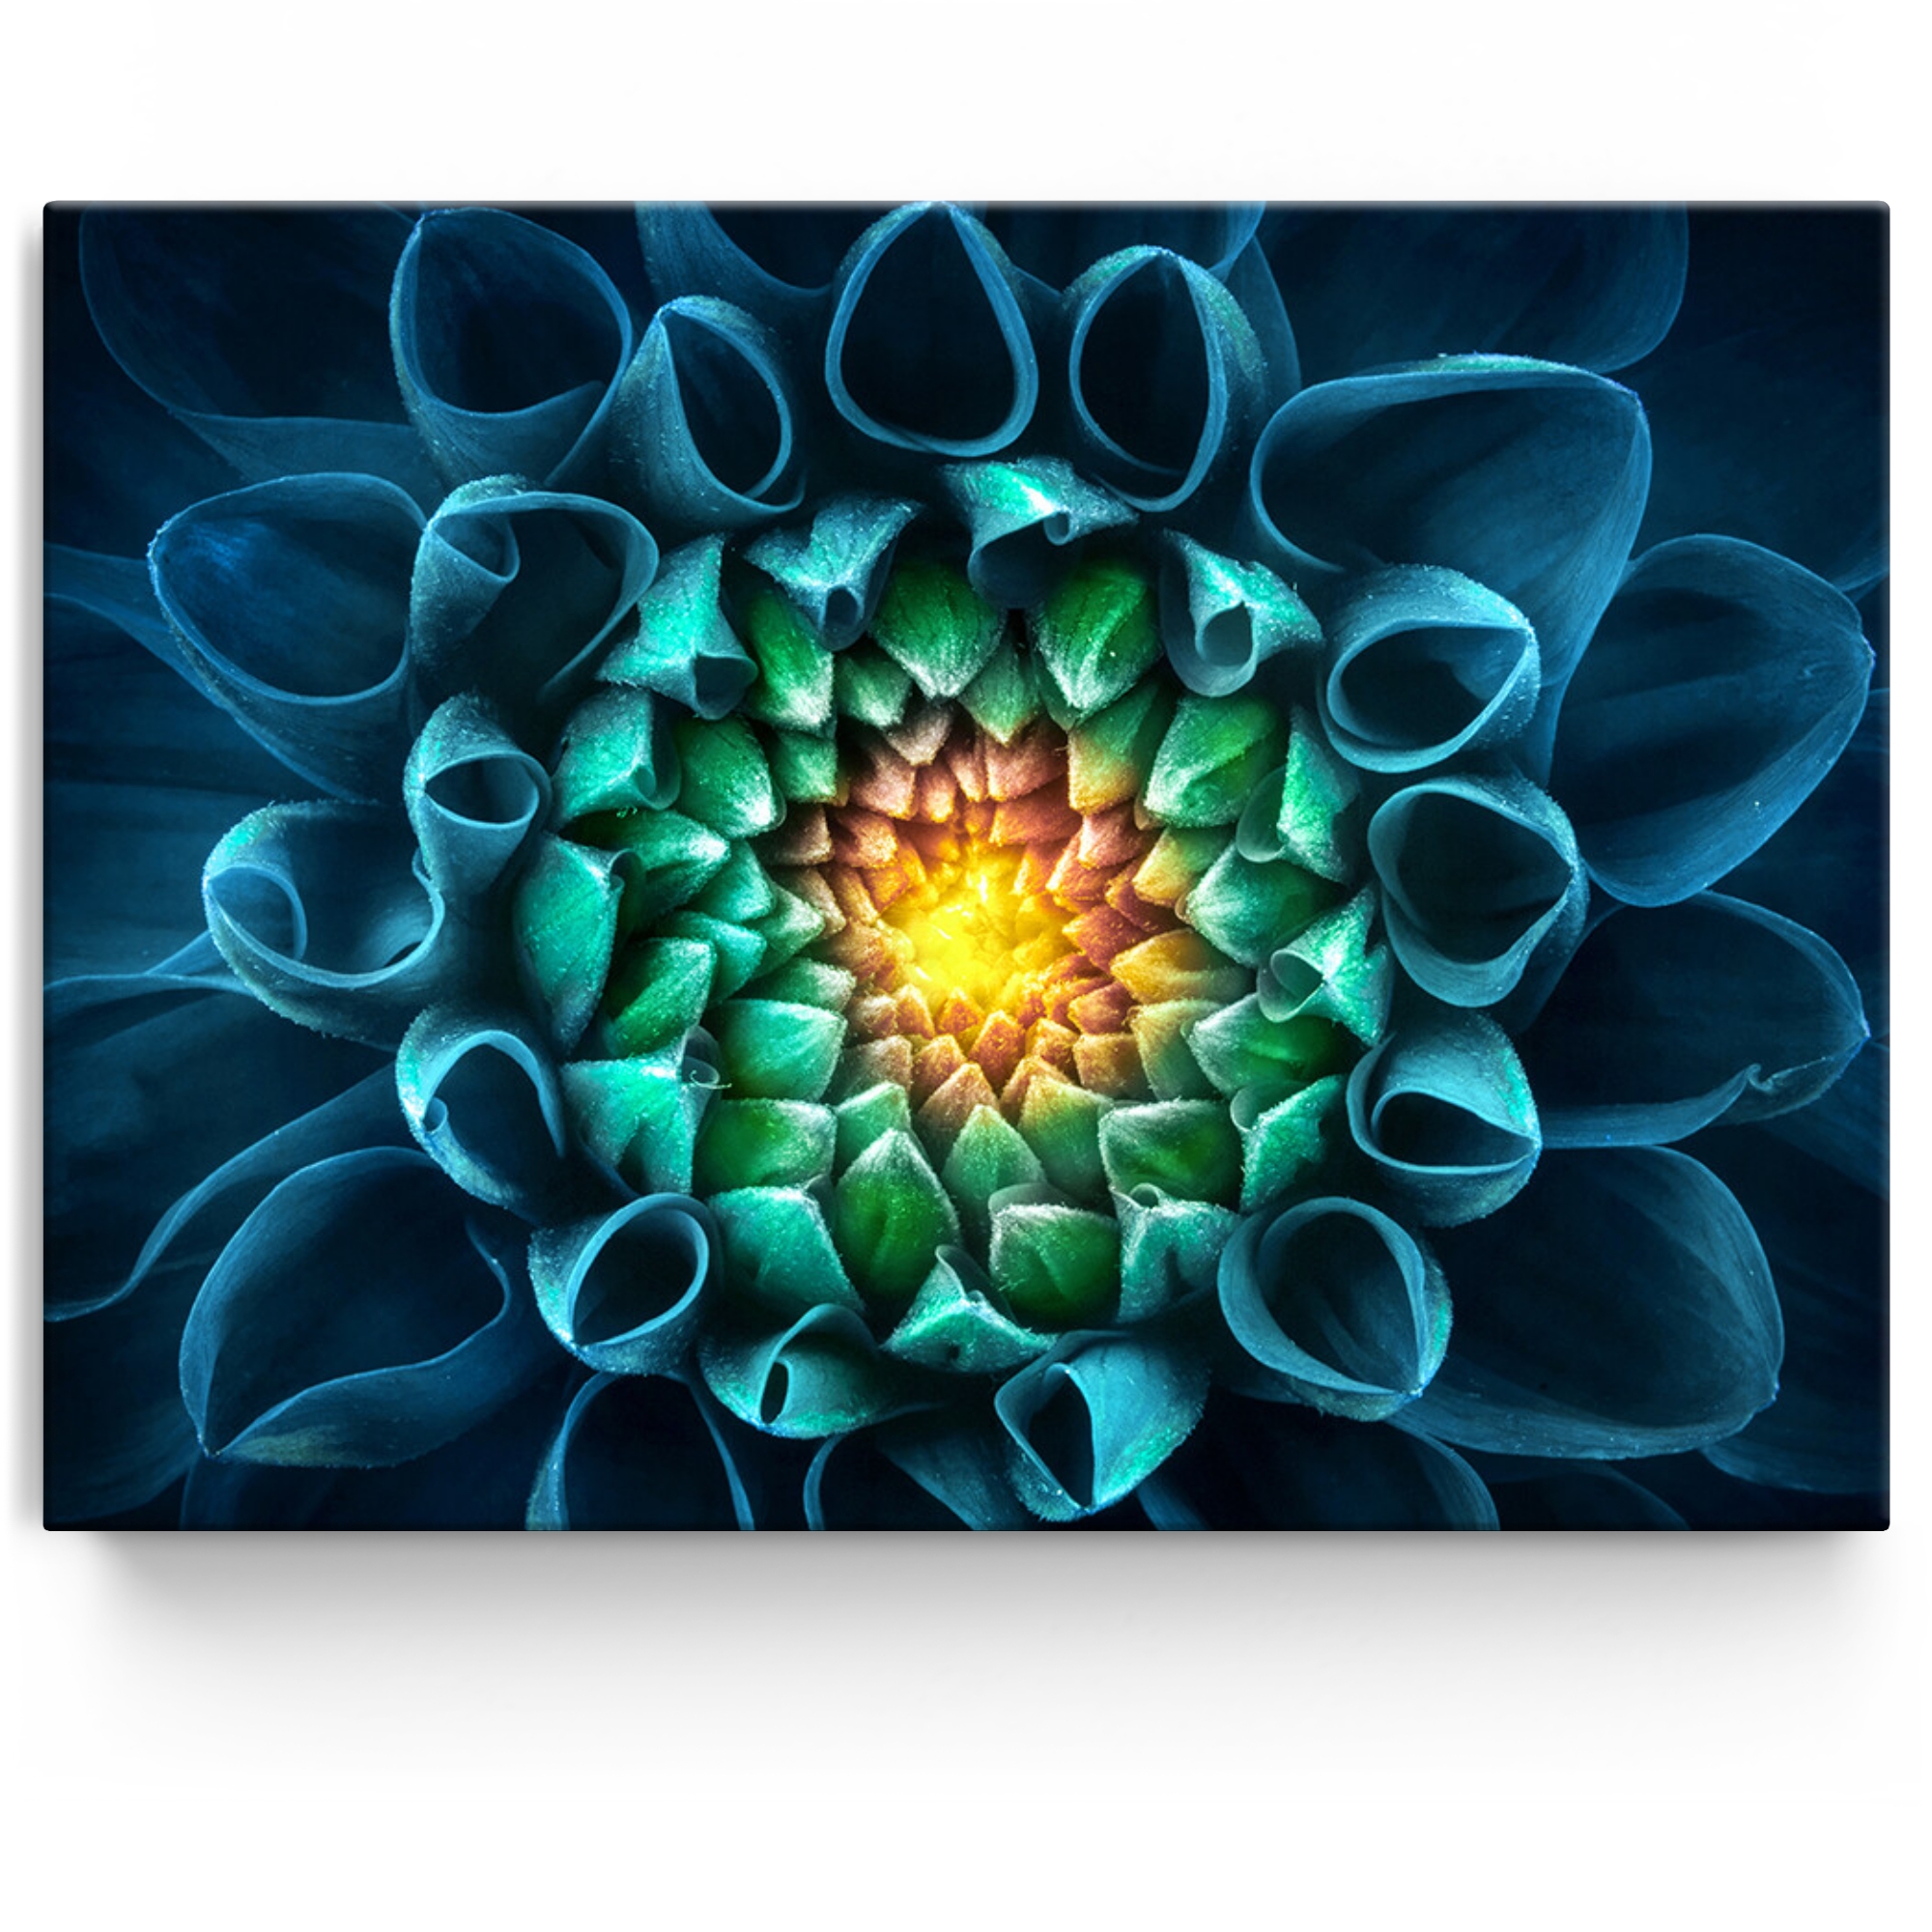 Gepersonaliseerde Canvas Blauwgroene chrysant